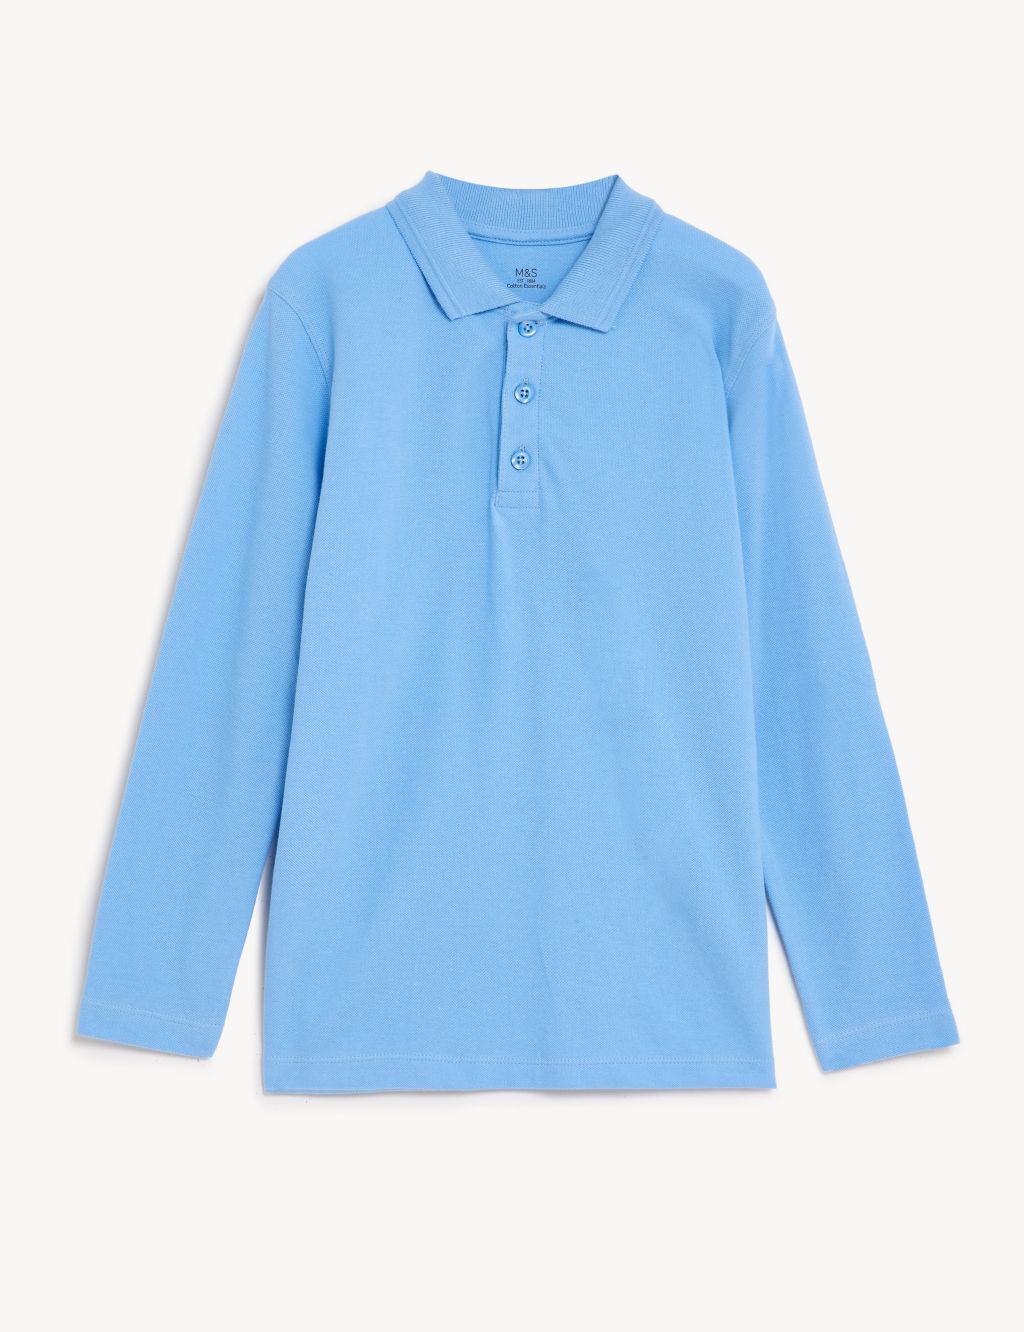 Unisex Long Sleeve Polo Shirt (2-16 Yrs) image 2